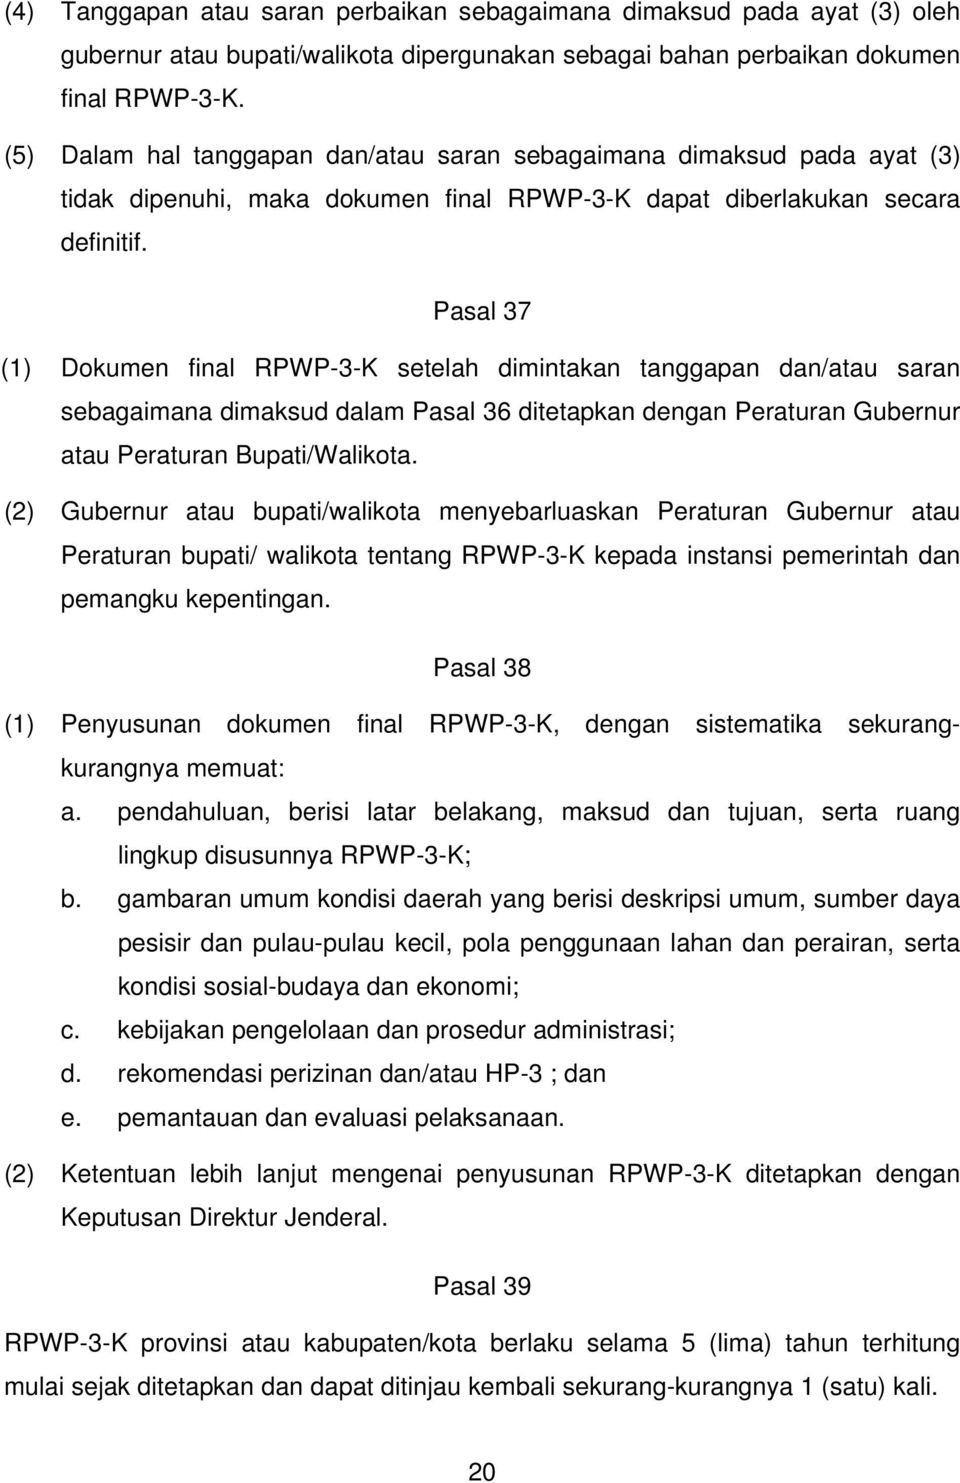 Pasal 37 (1) Dokumen final RPWP-3-K setelah dimintakan tanggapan dan/atau saran sebagaimana dimaksud dalam Pasal 36 ditetapkan dengan Peraturan Gubernur atau Peraturan Bupati/Walikota.